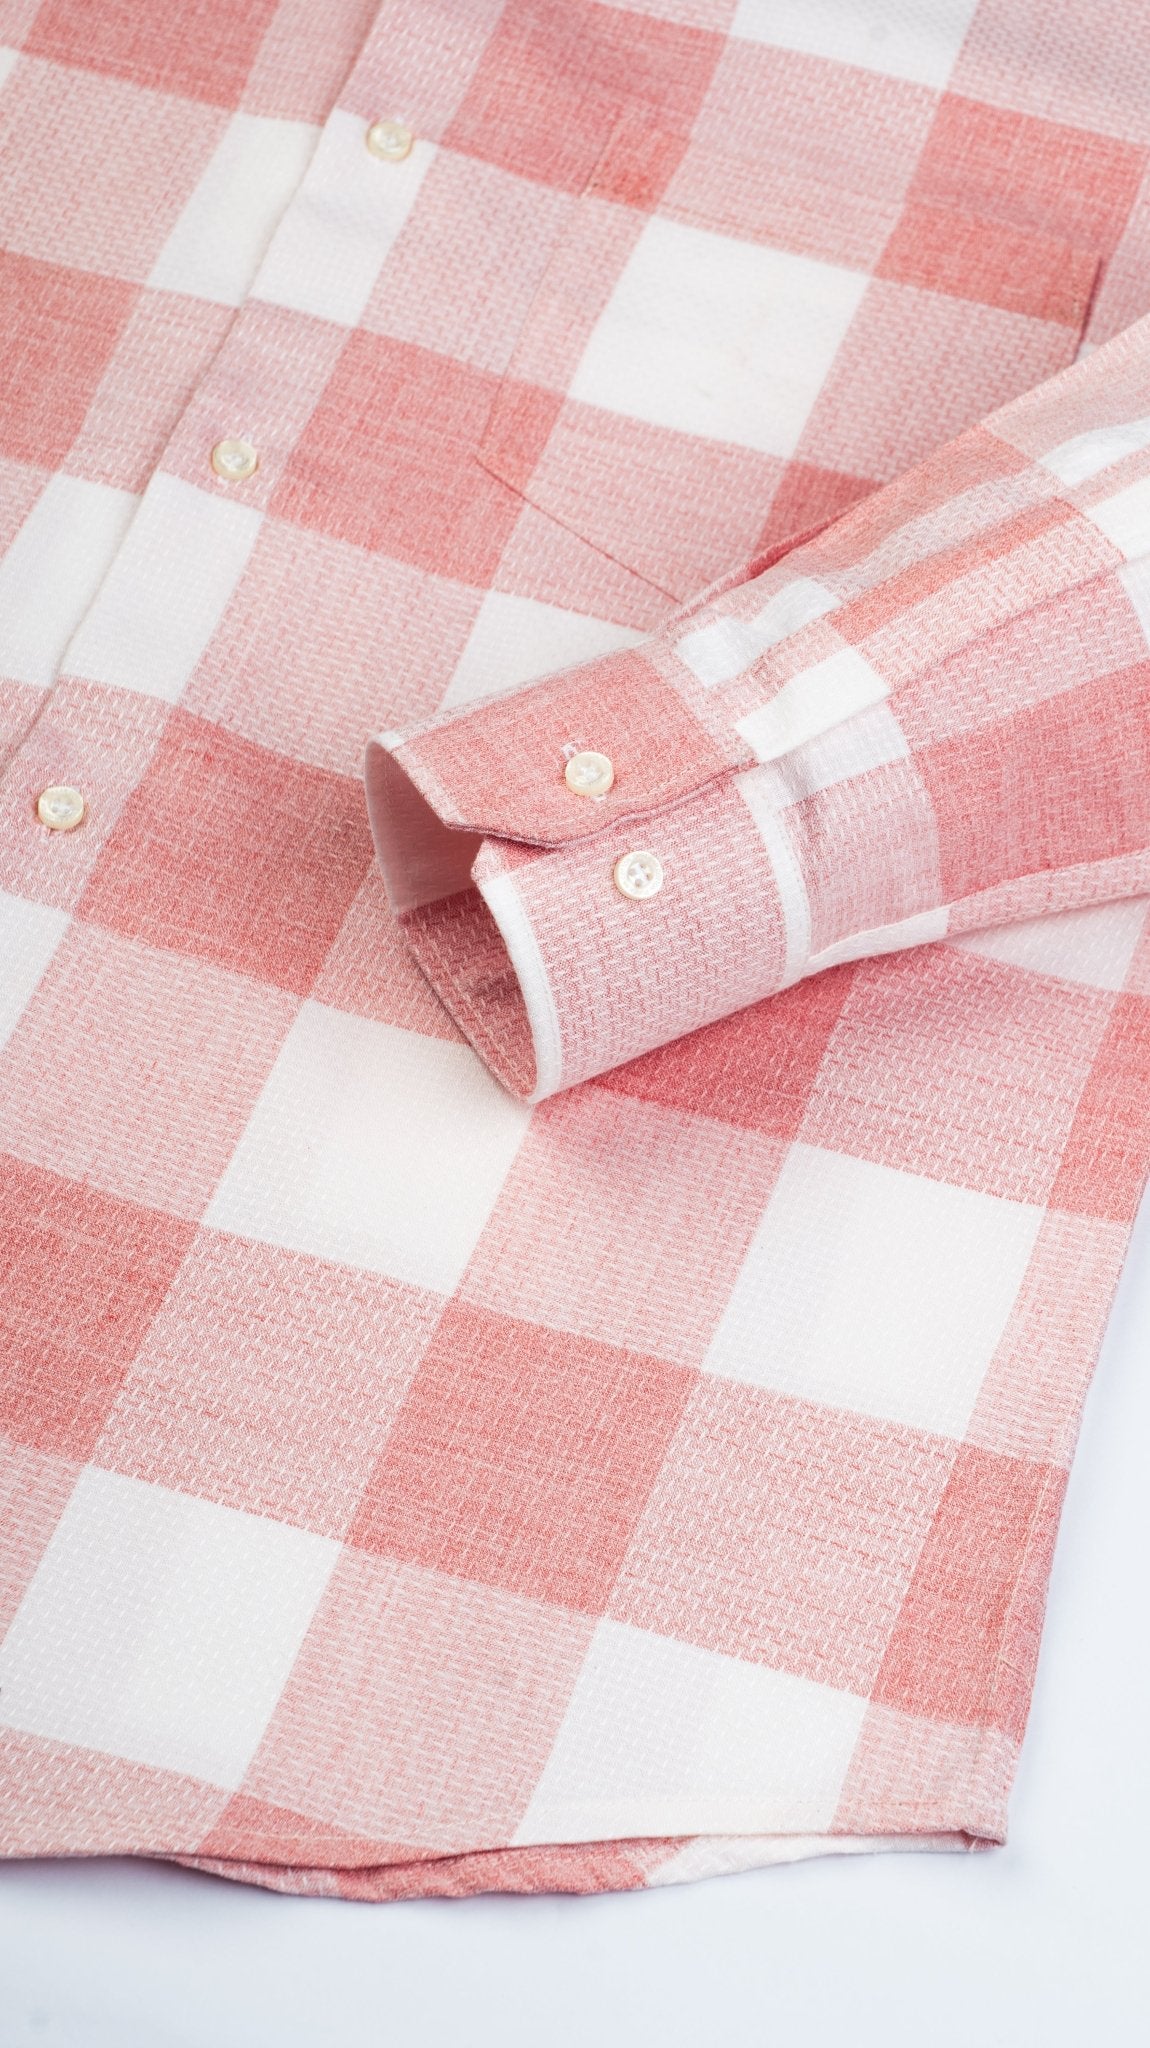 Pink Color Checks Pure Cotton Shirt For Men - Punekar Cotton